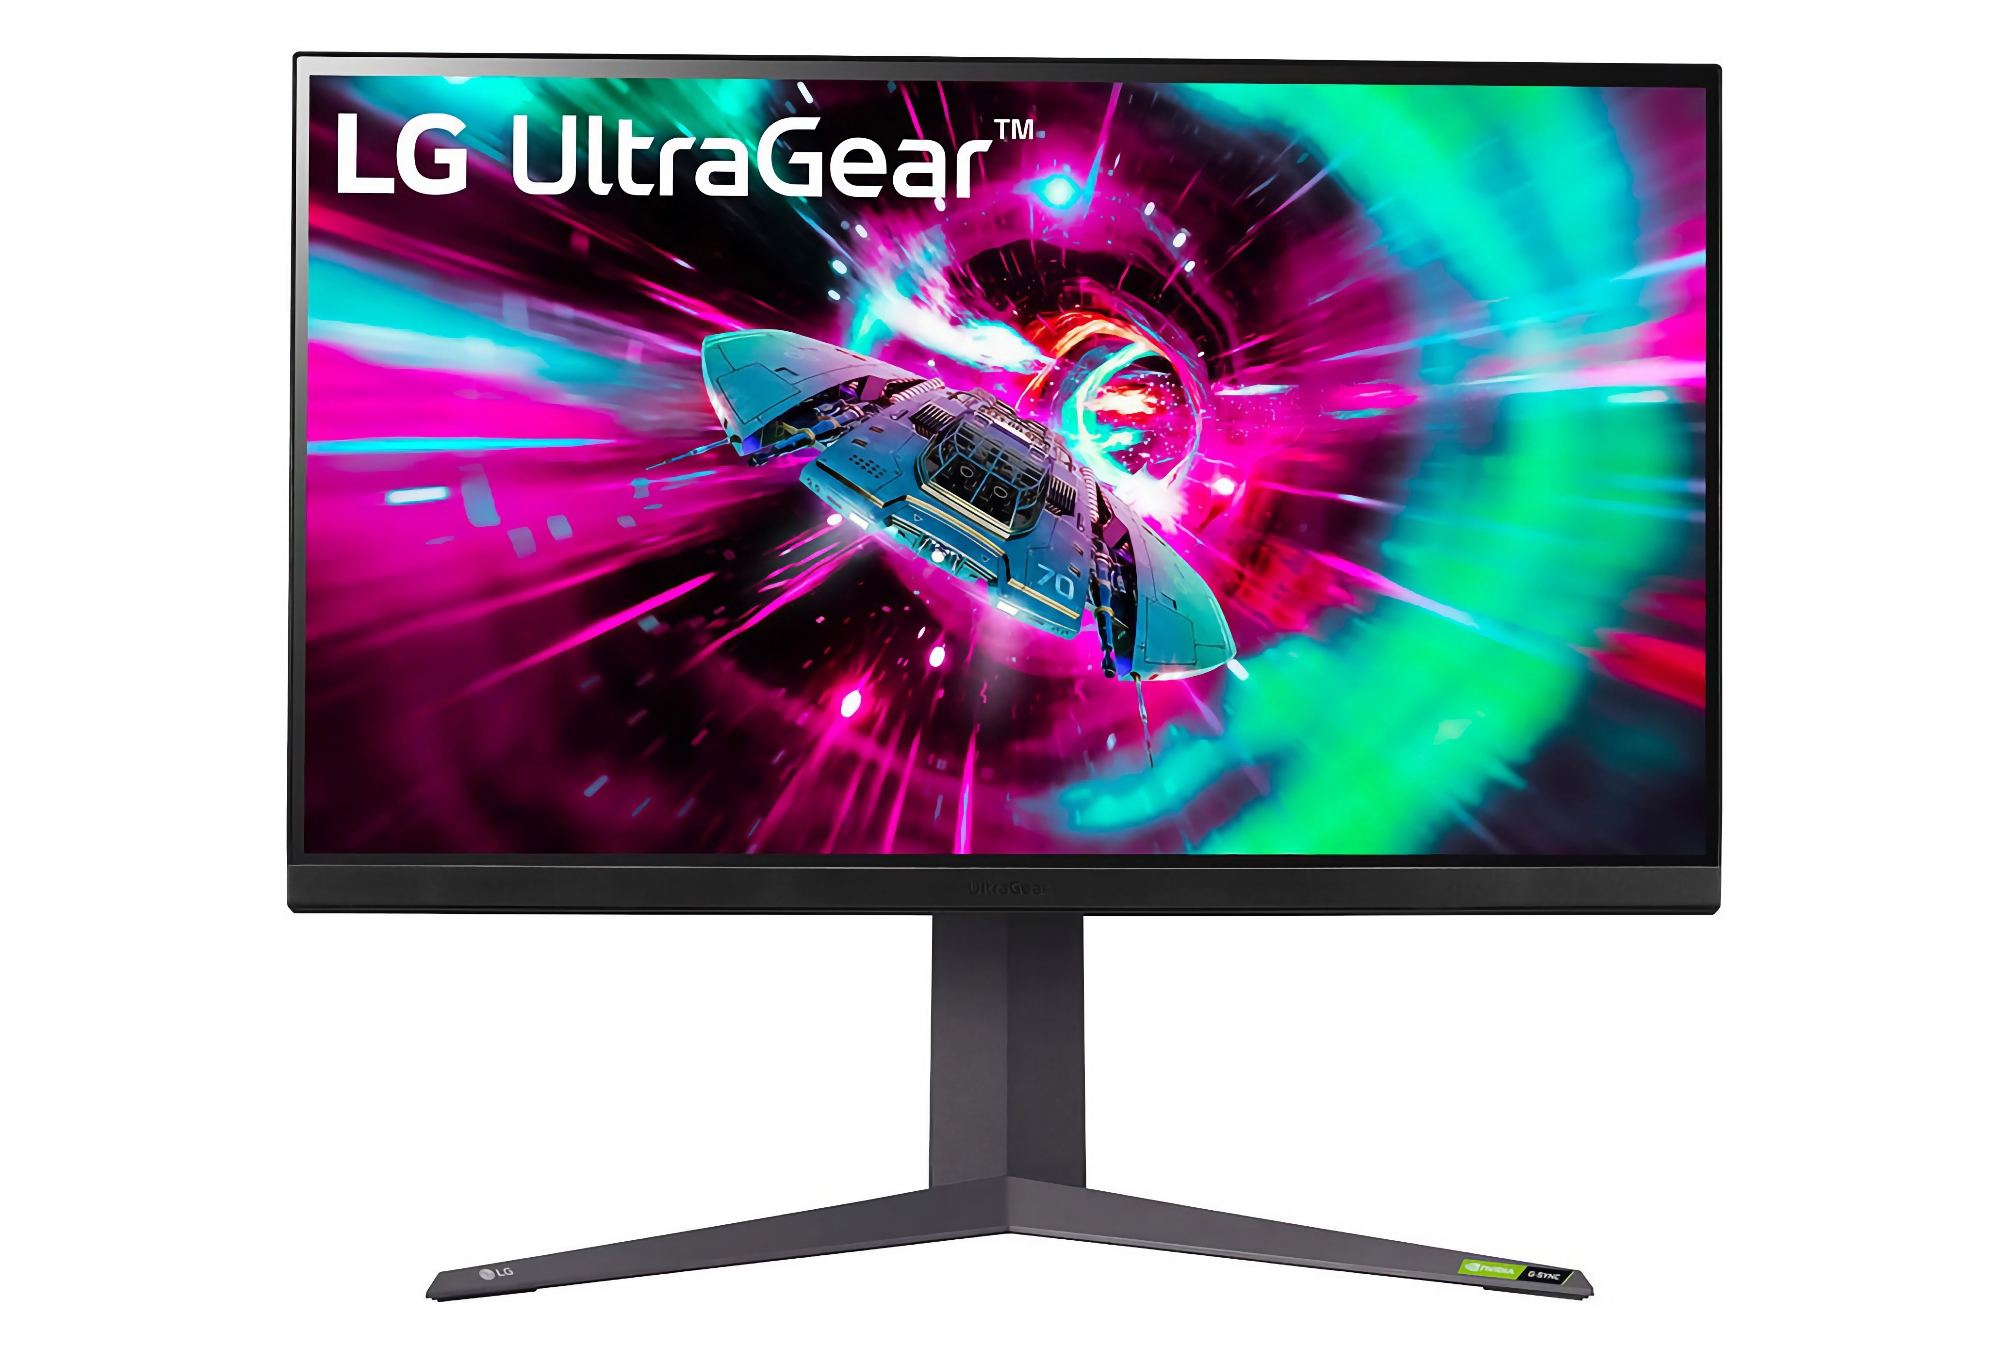 LG introducerar nya UltraGear-monitorer med 27-32″ skärmar och 144Hz IPS-paneler